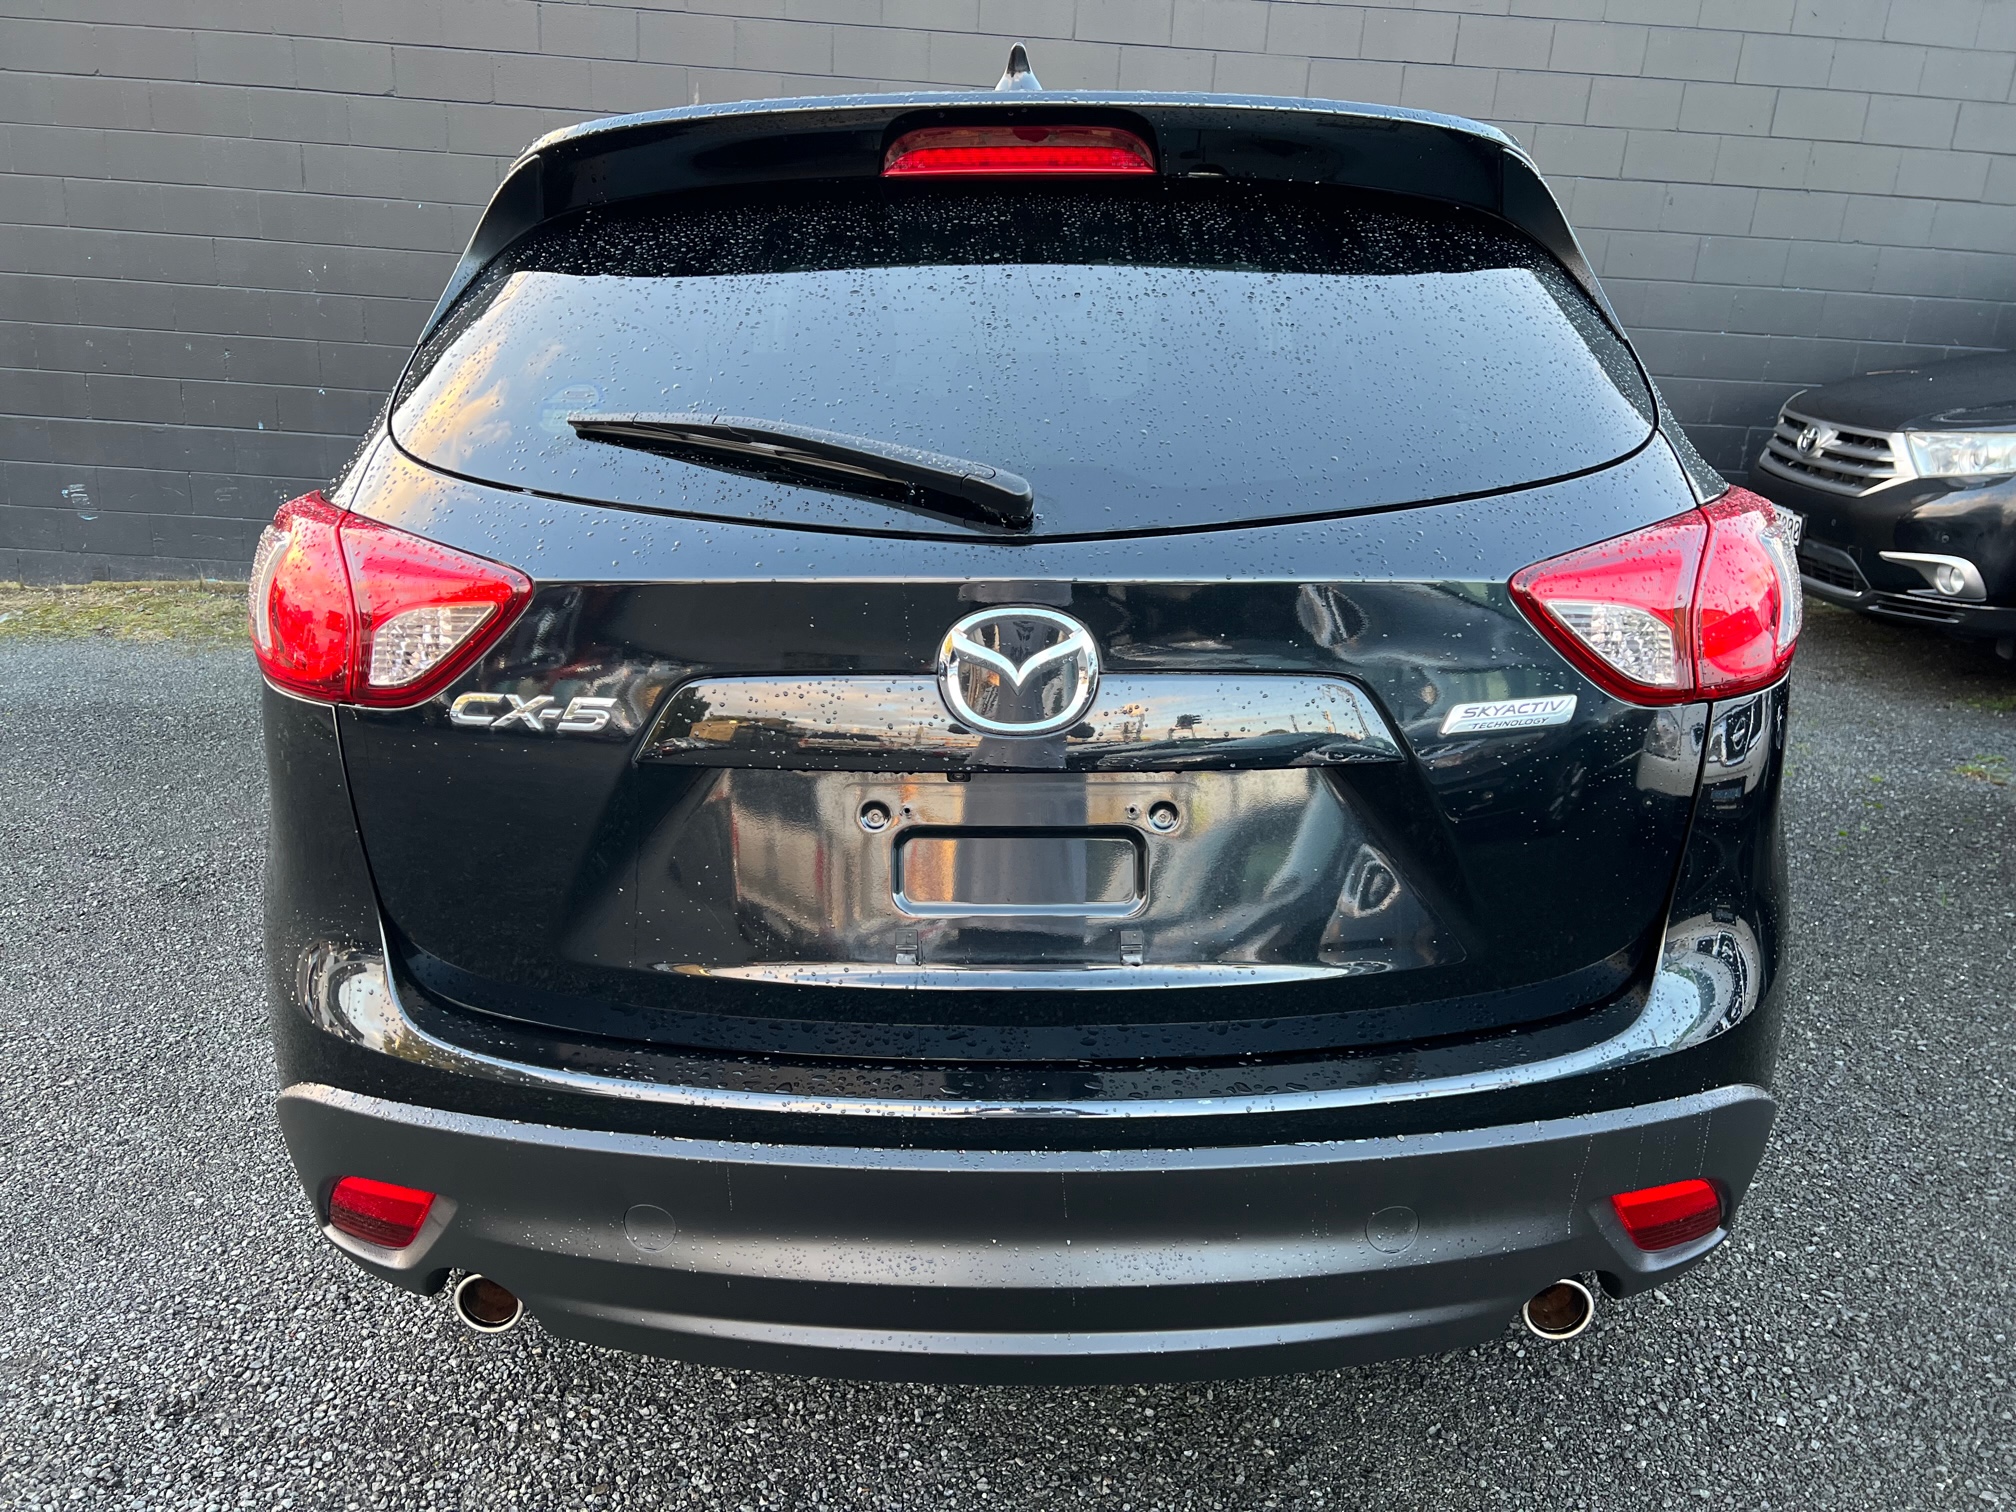 Mazda CX-5 2013 Image 4